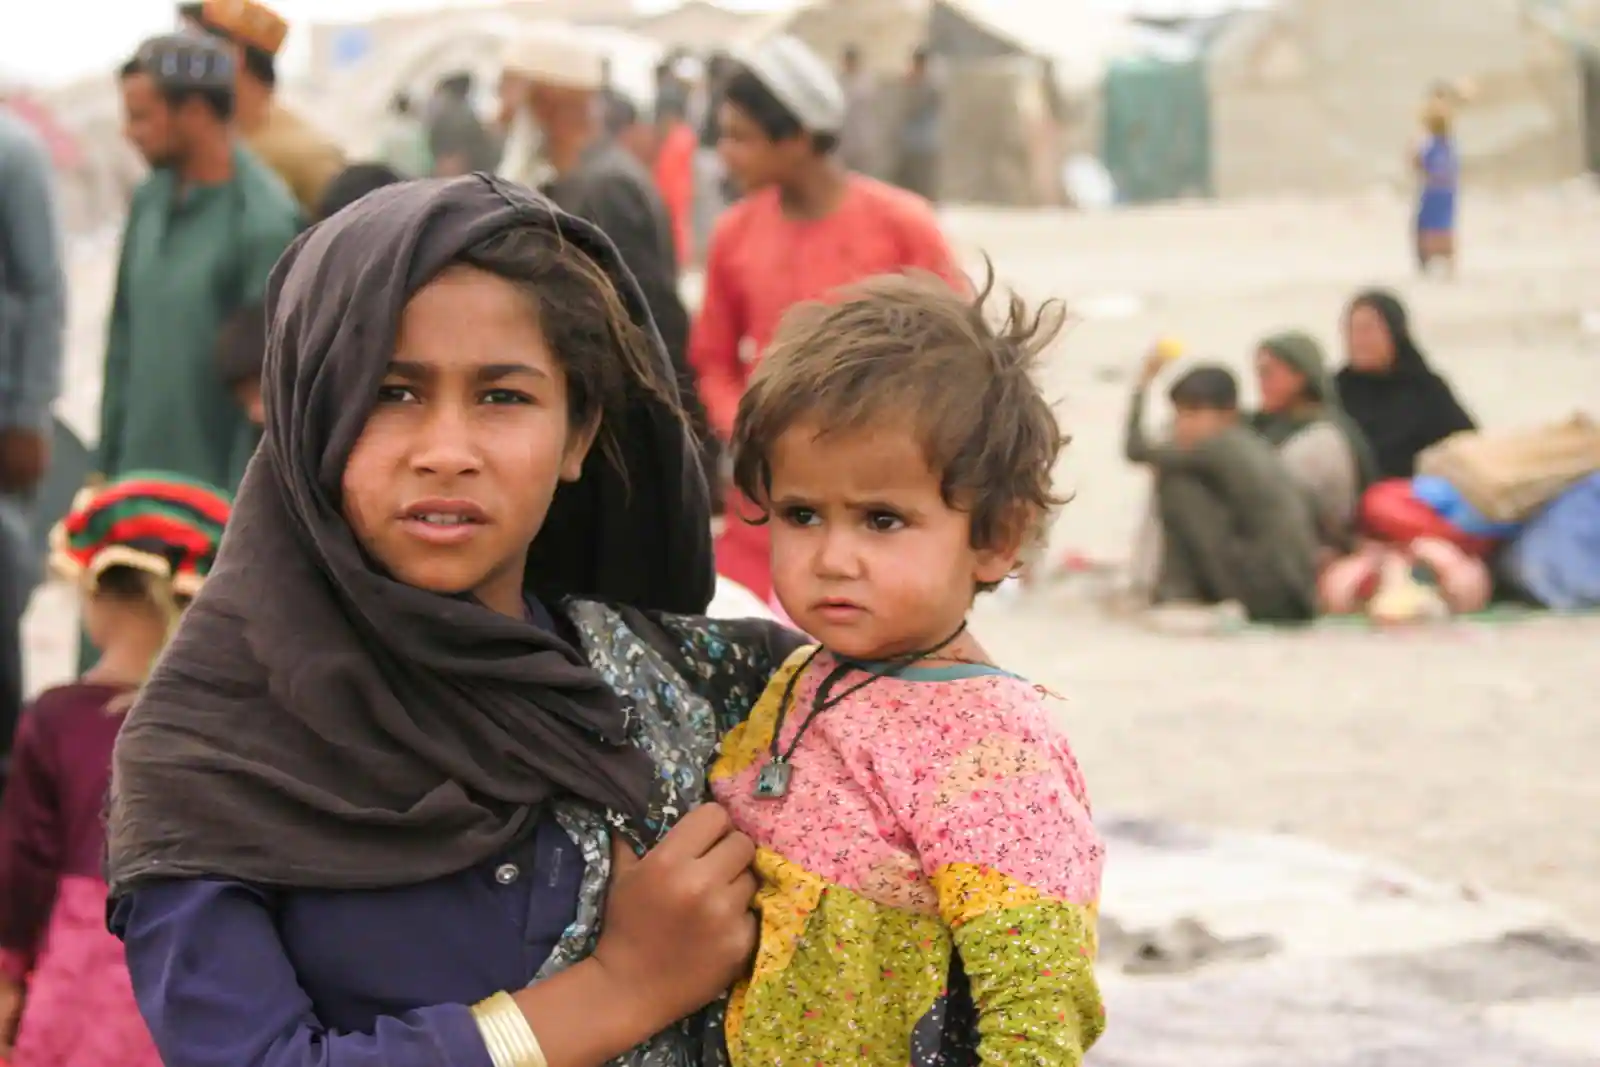 New Delhi:अफगानिस्तान की स्थिति बदहाल! आधी आबादी के सामने रोटी और ठंड का संकट, ICRC ने दी चेतावनी